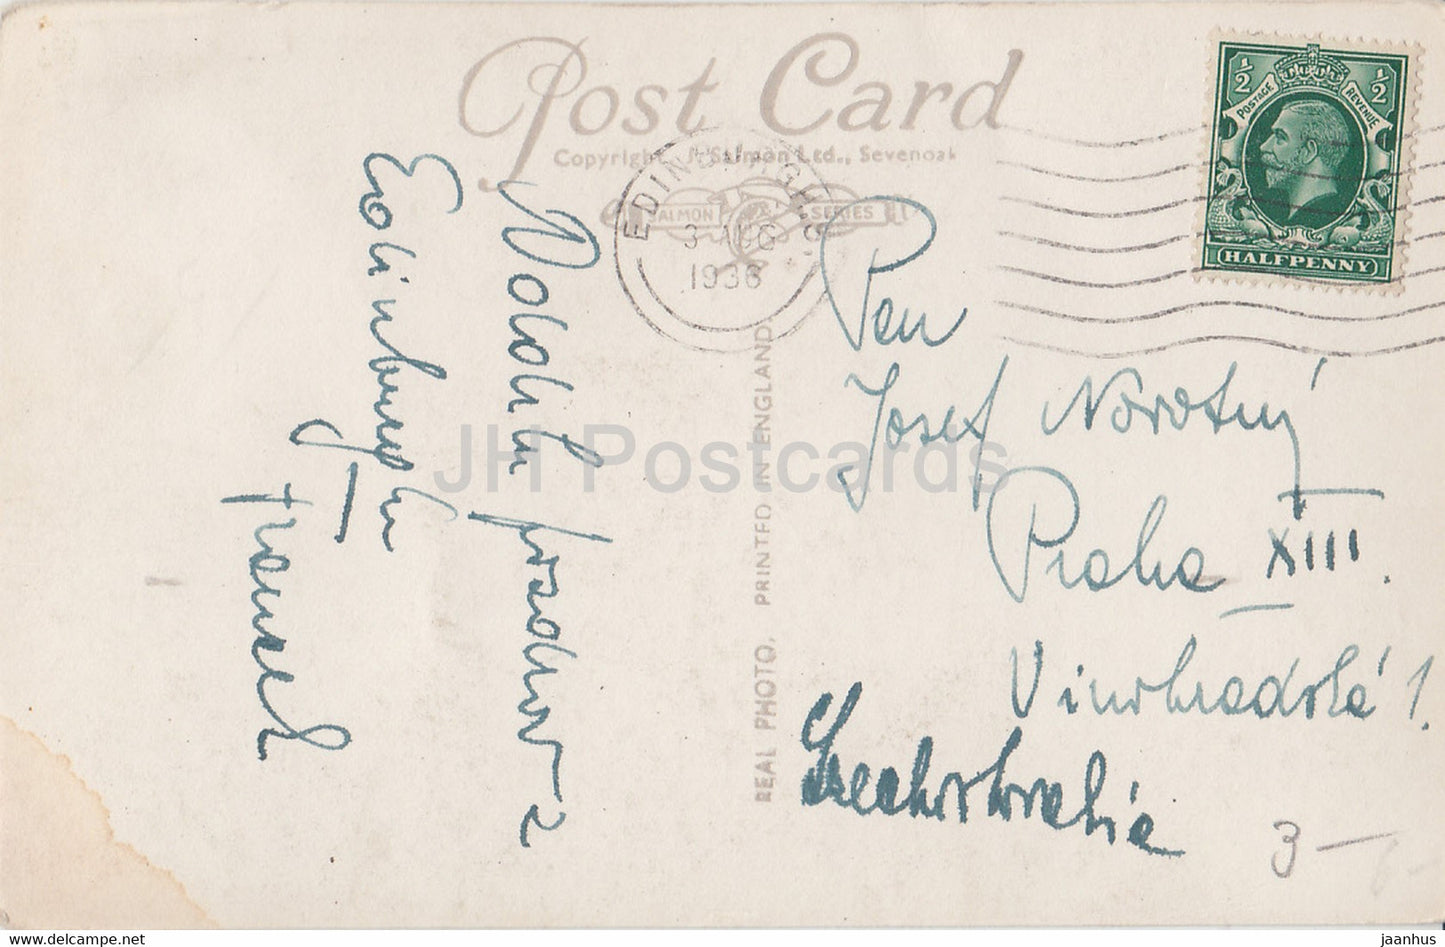 Édimbourg - Cathédrale St Giles - 2096 - carte postale ancienne - 1936 - Écosse - Royaume-Uni - utilisé